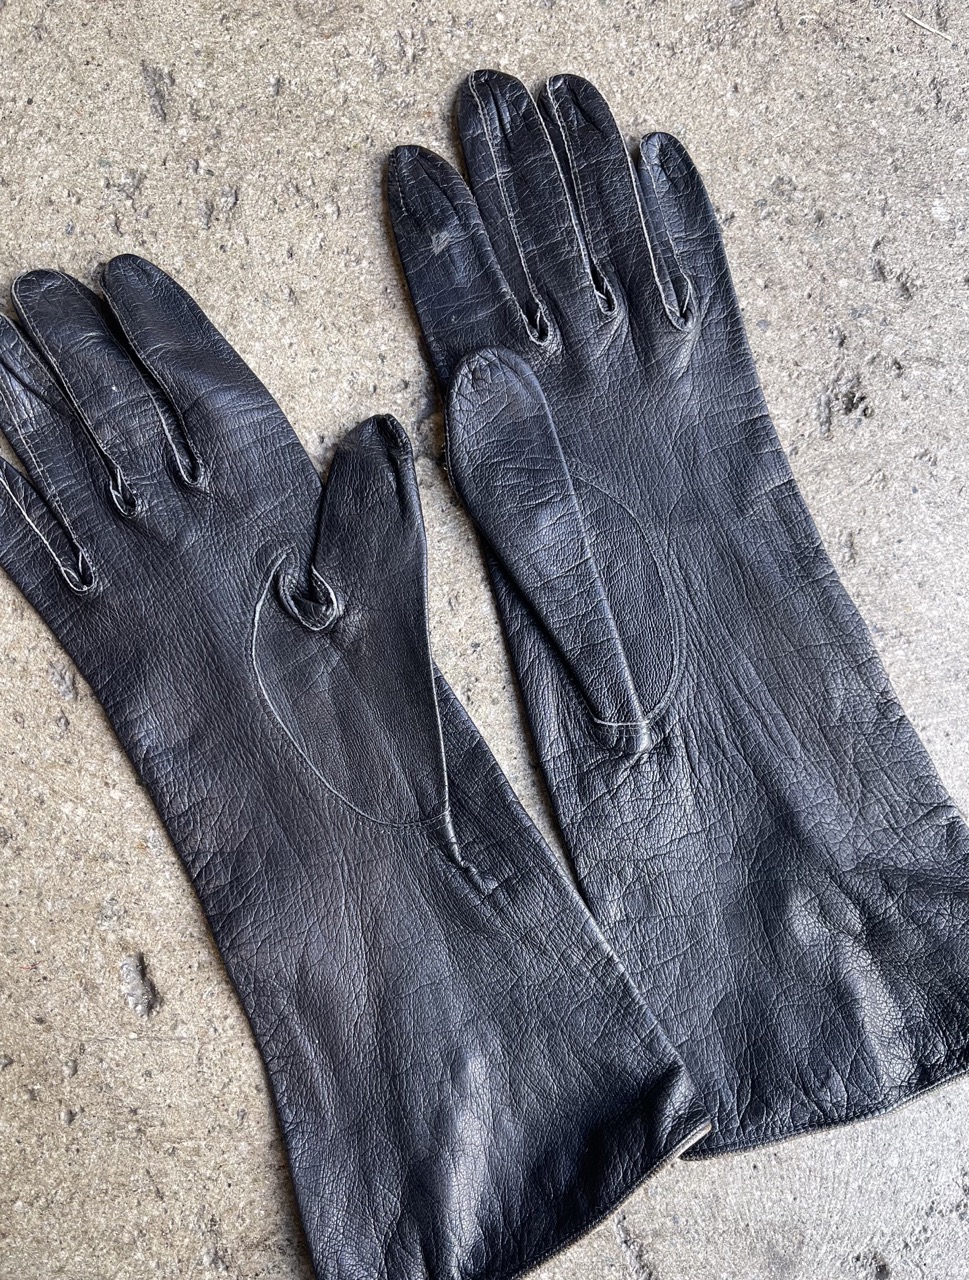 Vintage 60s Black Leather Gloves